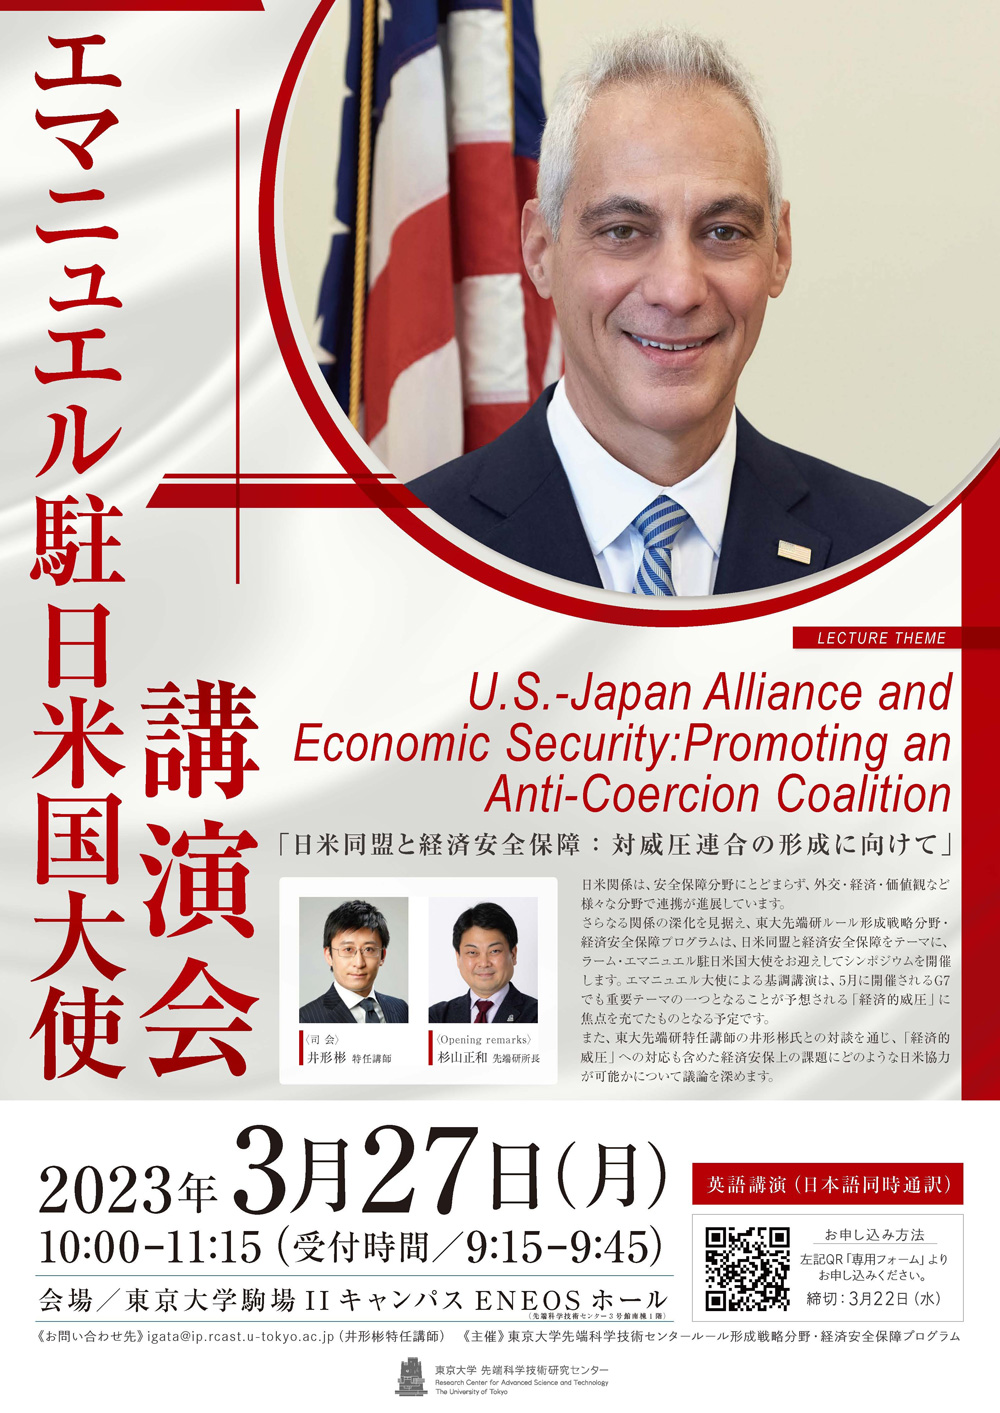 エマニュエル米国大使招待講演「日米同盟と経済安全保障――対威圧連合の形成に向けて」